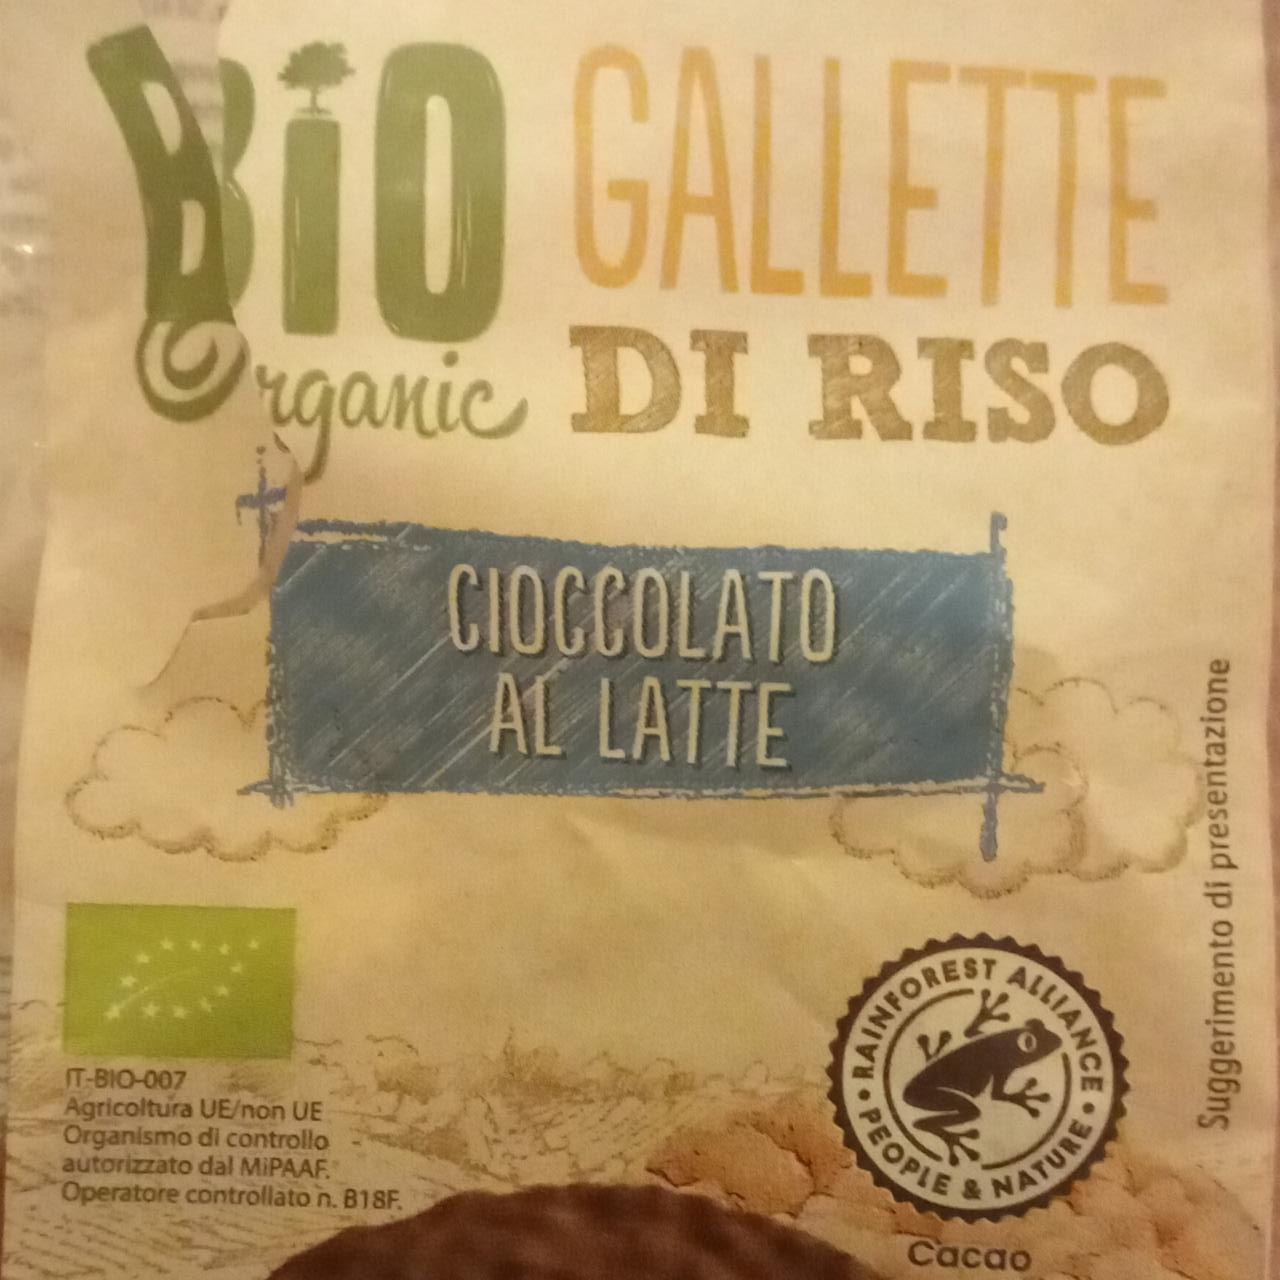 Fotografie - Bio Organic Gallette di riso cioccolato al latte Sondey